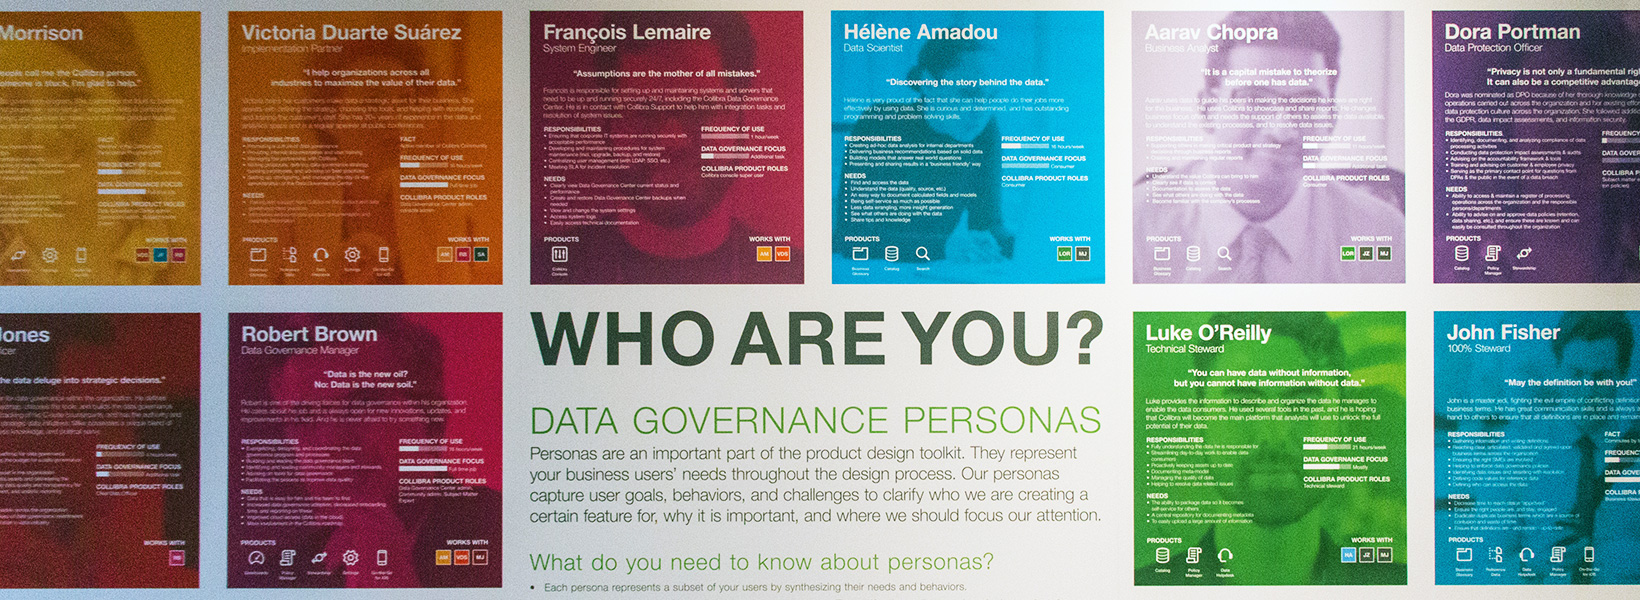 DC '17 - Collibra Data Governance Persona Wall